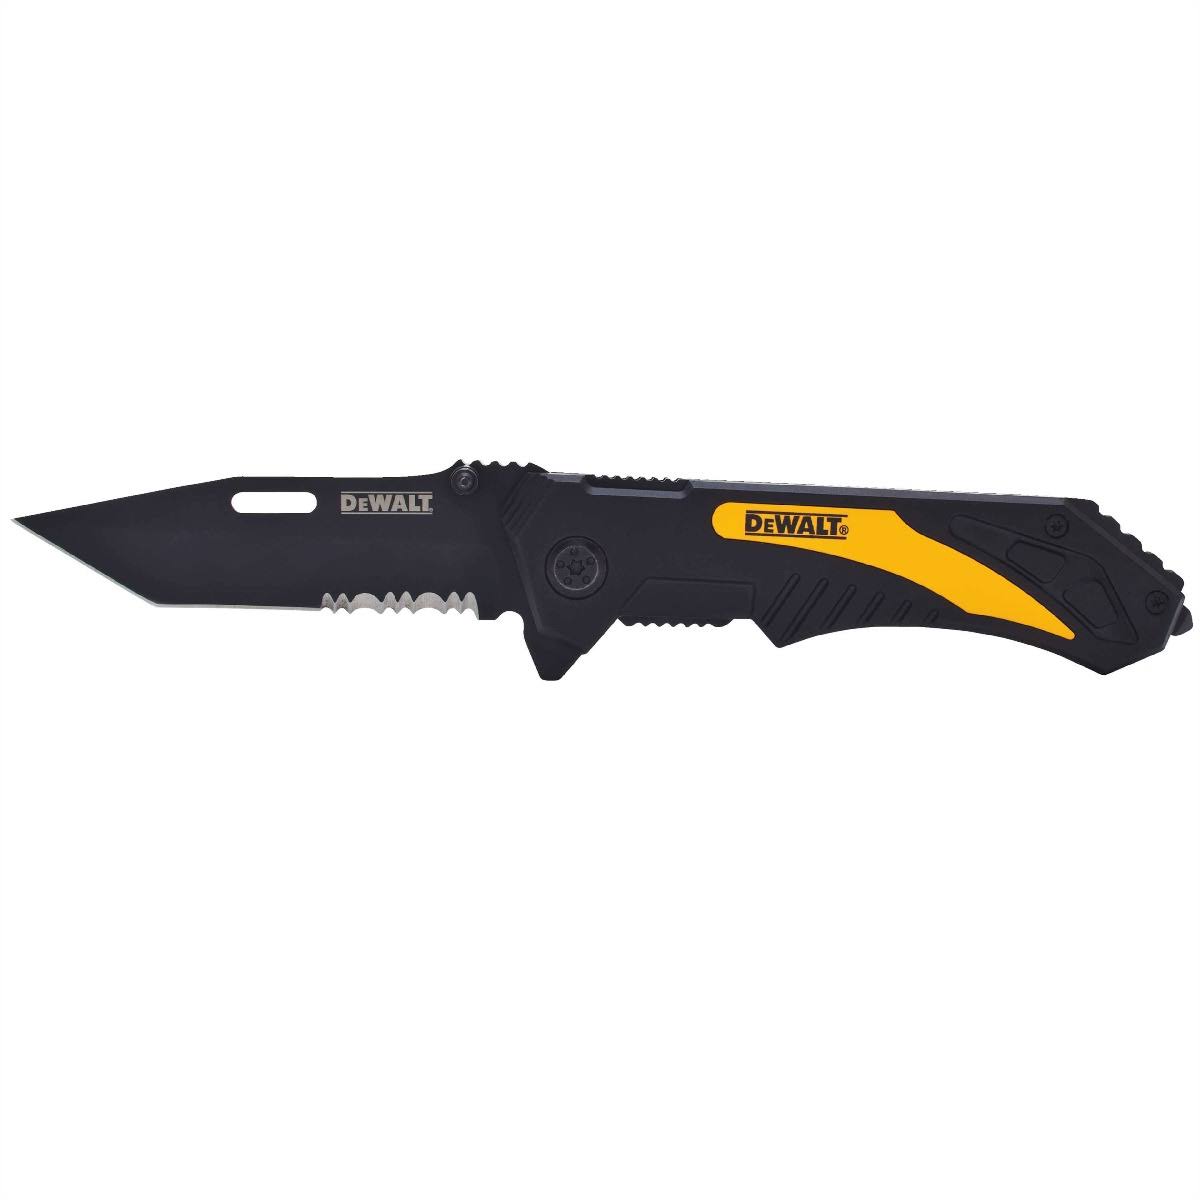 Dewalt Folding Pocket Knife - 2.25" Blade